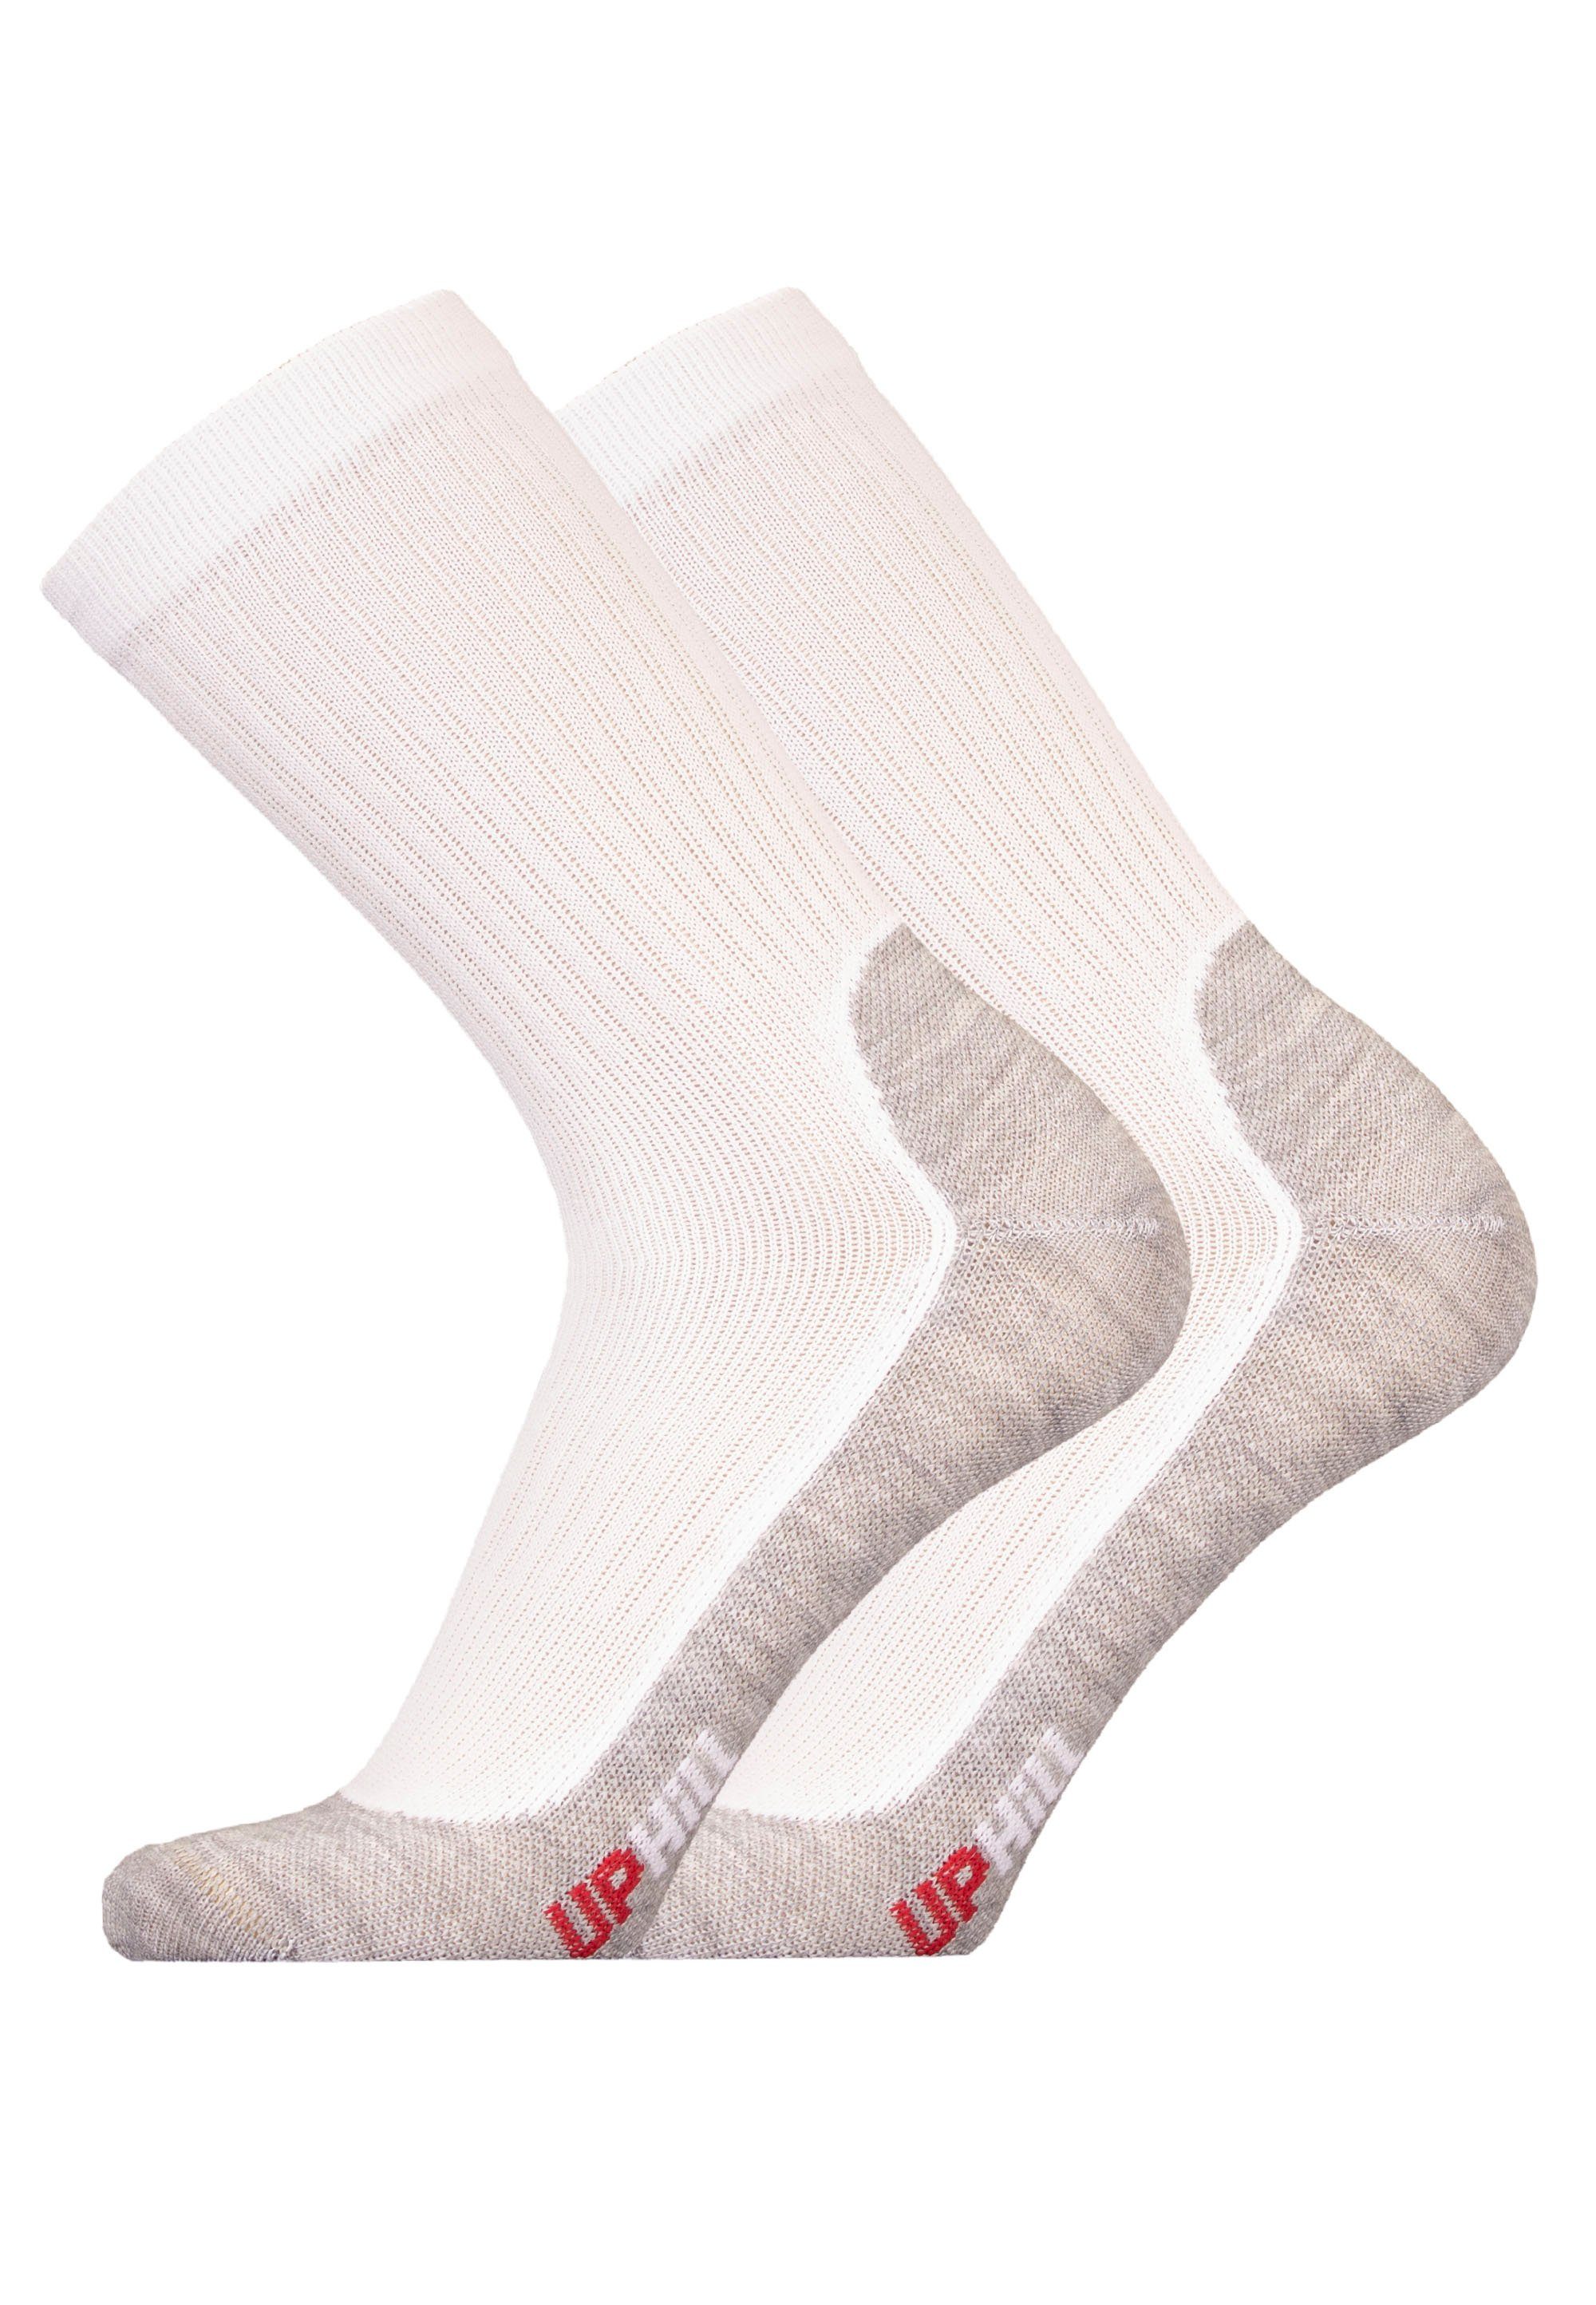 UphillSport Socken WINTER XC 2er mit Funktion weiß-grau atmungsaktiver Pack (2-Paar)